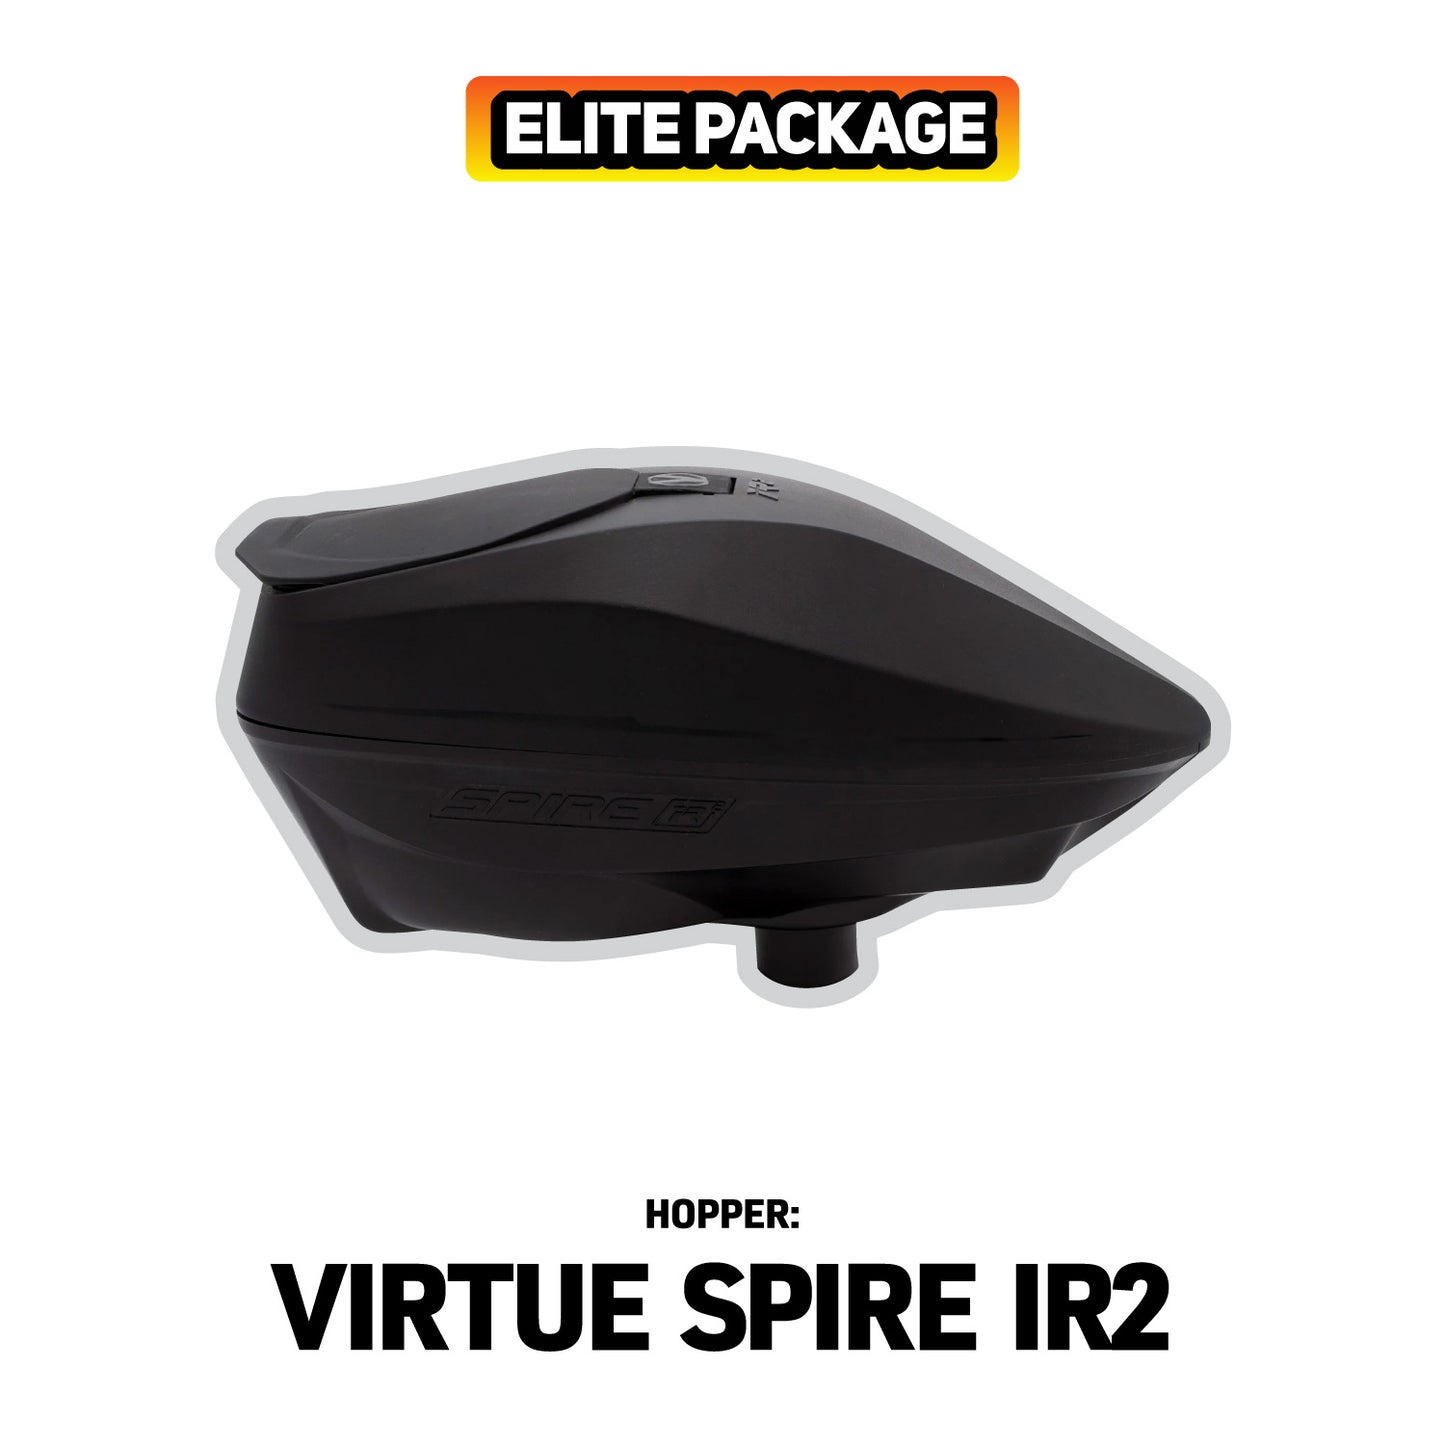 Elite Package - Eclipse GTEK 180R